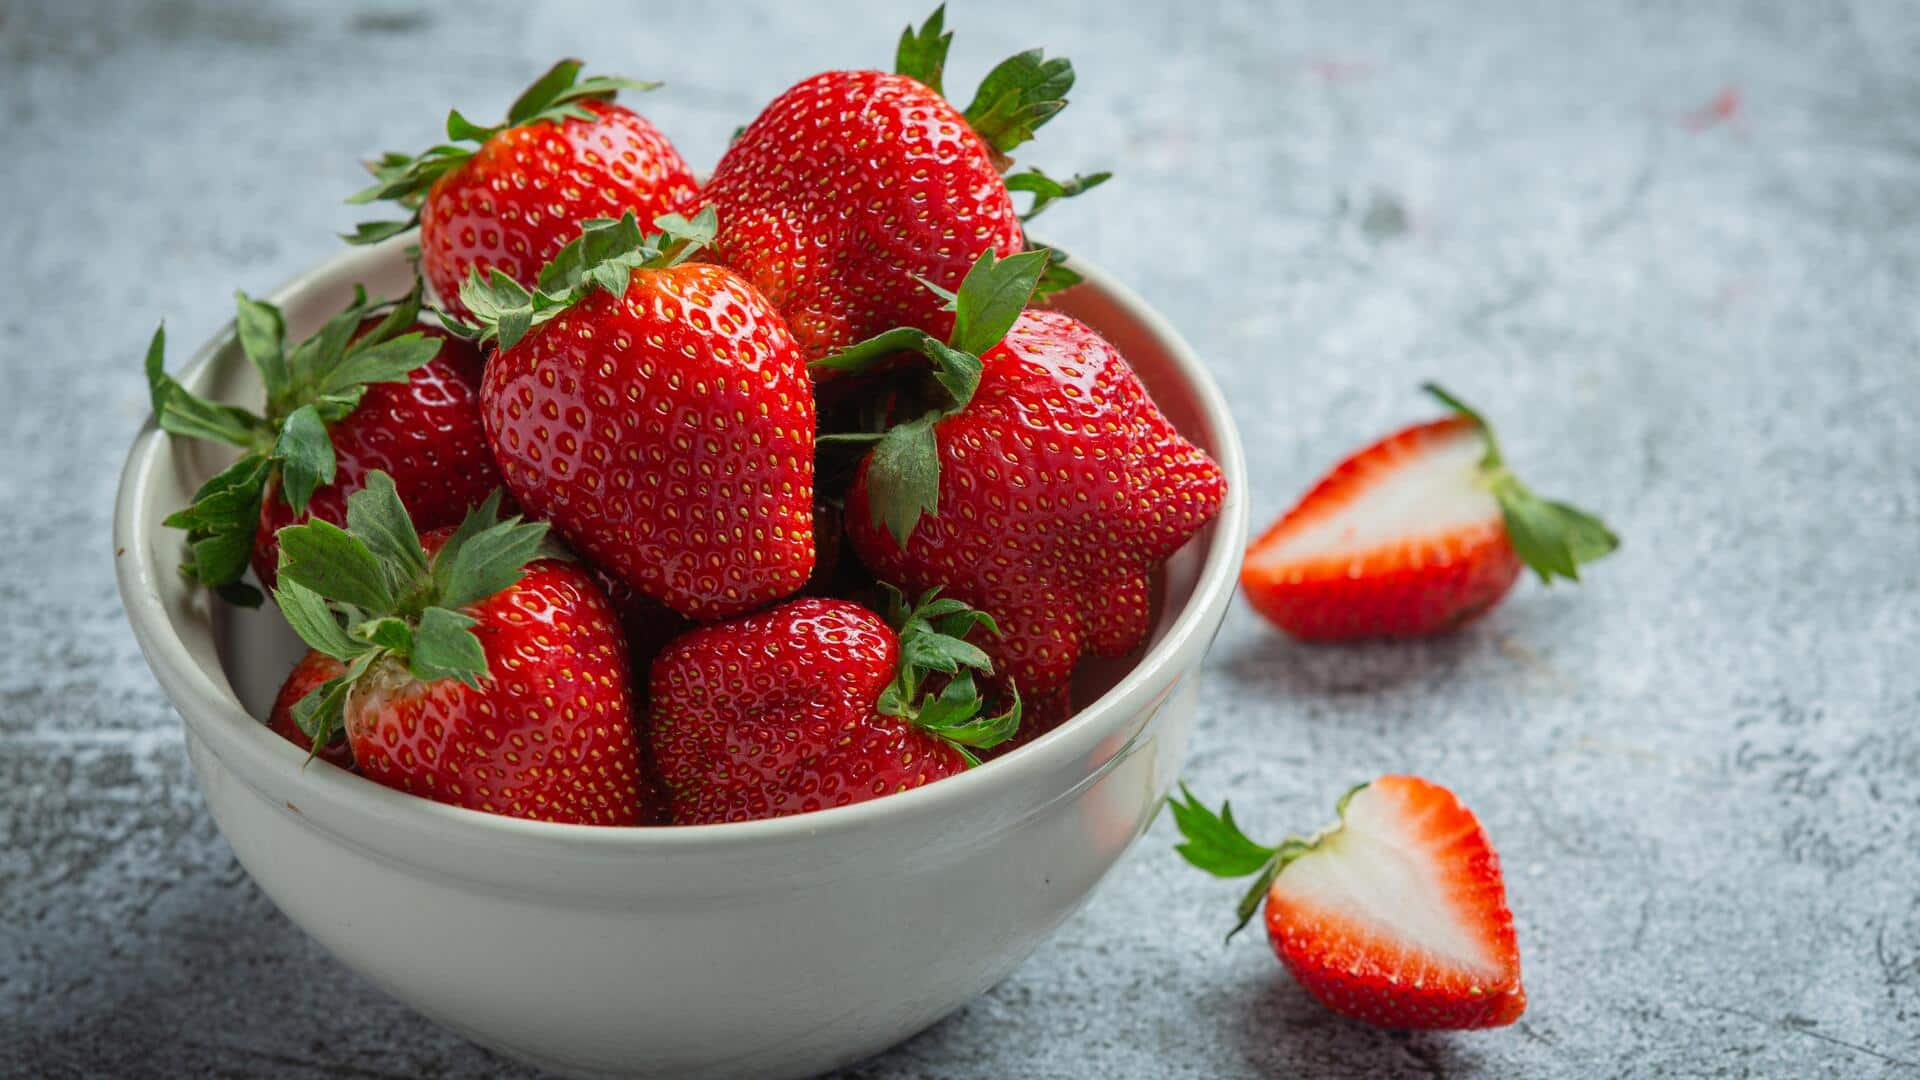 स्ट्रॉबेरी को इन 5 रेसिपी के जरिए डाइट में करें शामिल, स्वास्थ्य के लिए है लाभदायक 